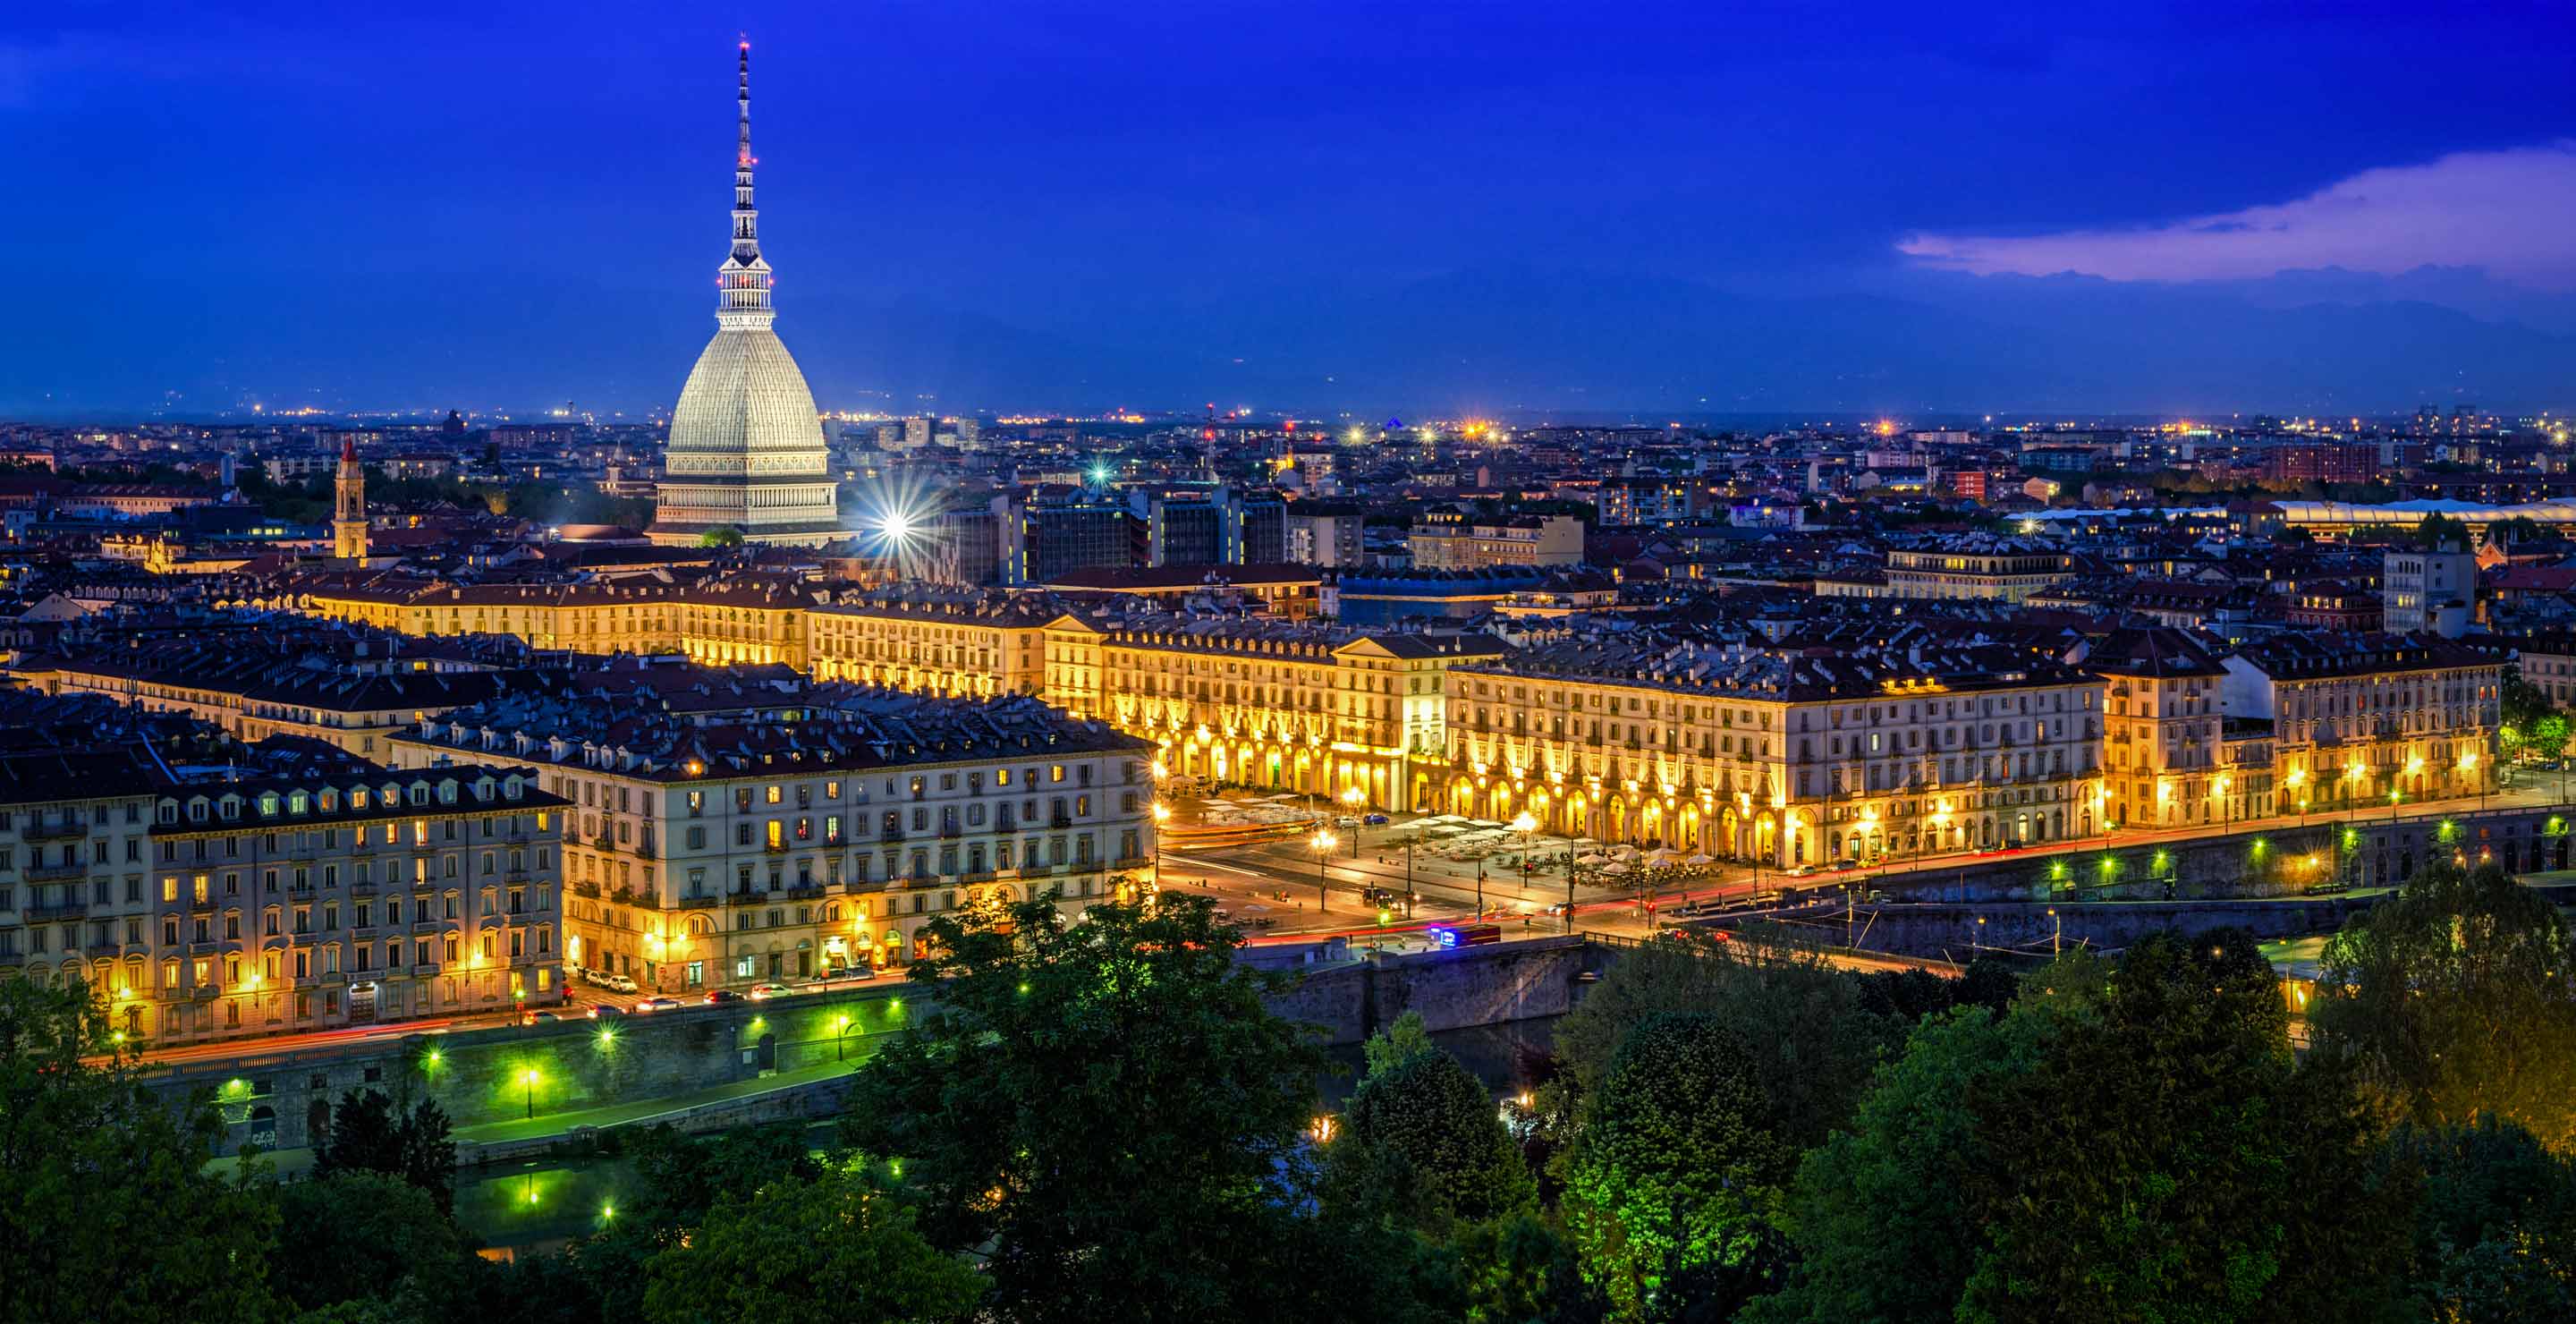 Pullman per Torino: orari e offerte biglietti pullman | Trainline